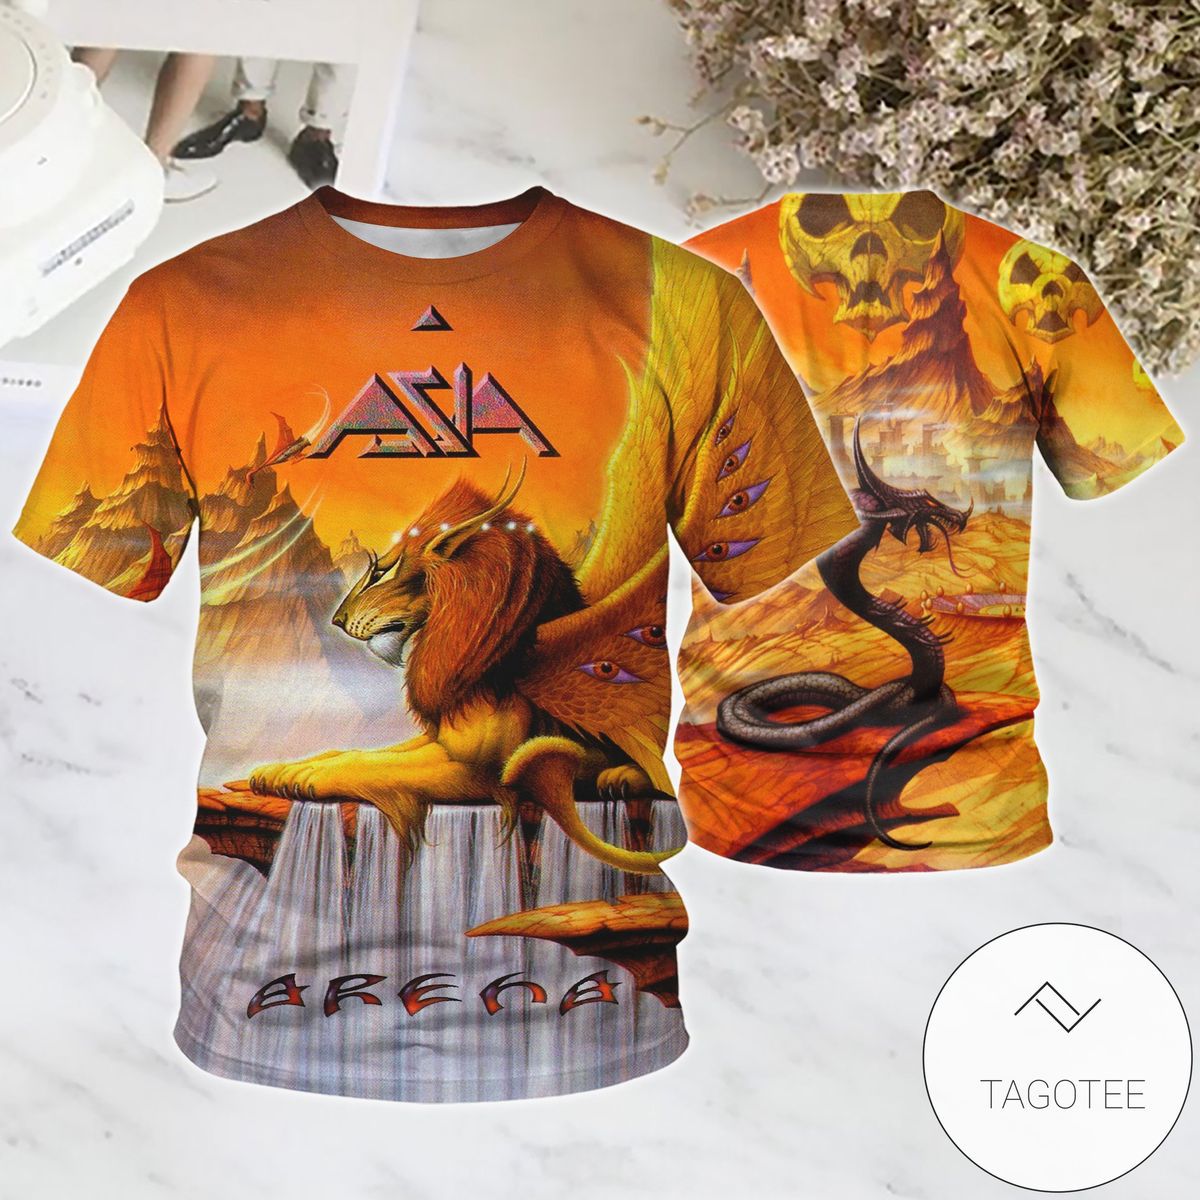 Asia Arena Album Cover Shirt